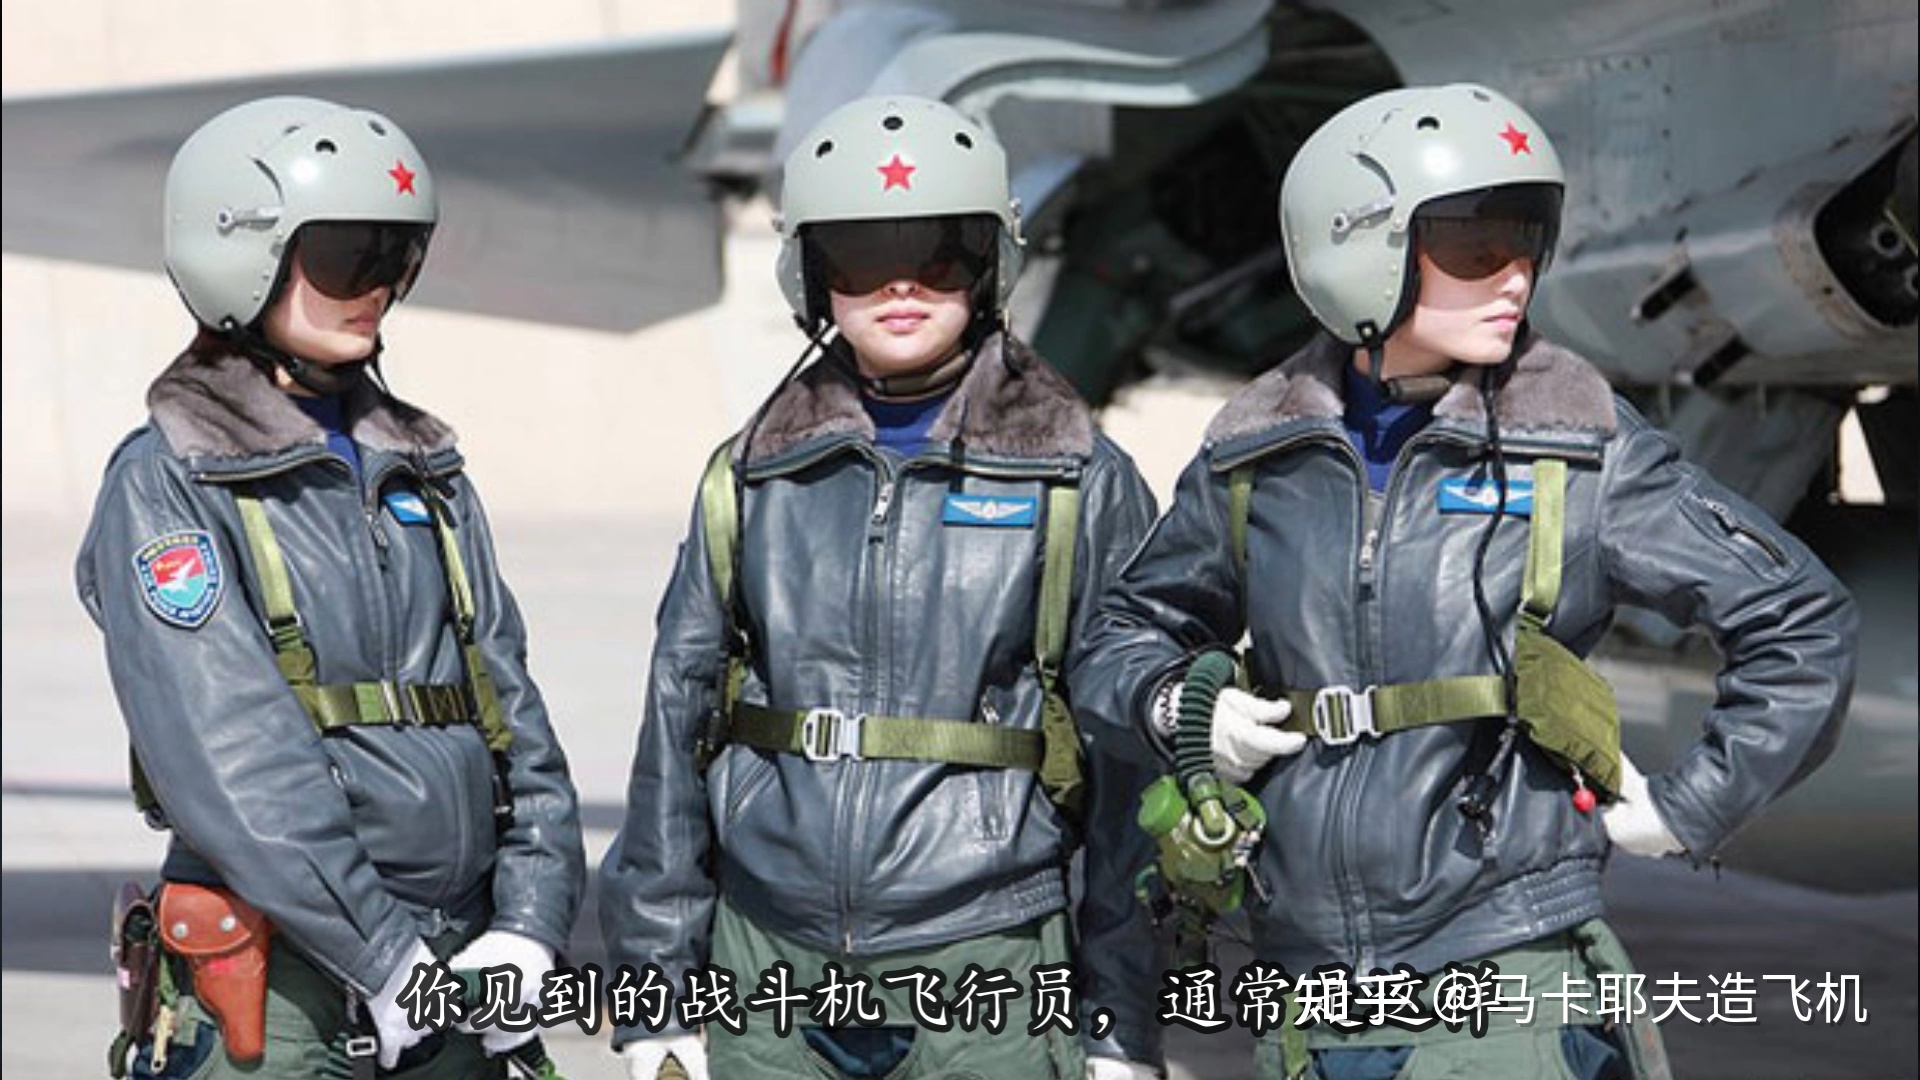 中国民用航空飞行学院飞行专业_中国飞行员有多强悍_中国民用航空飞行学院 飞行技术学院